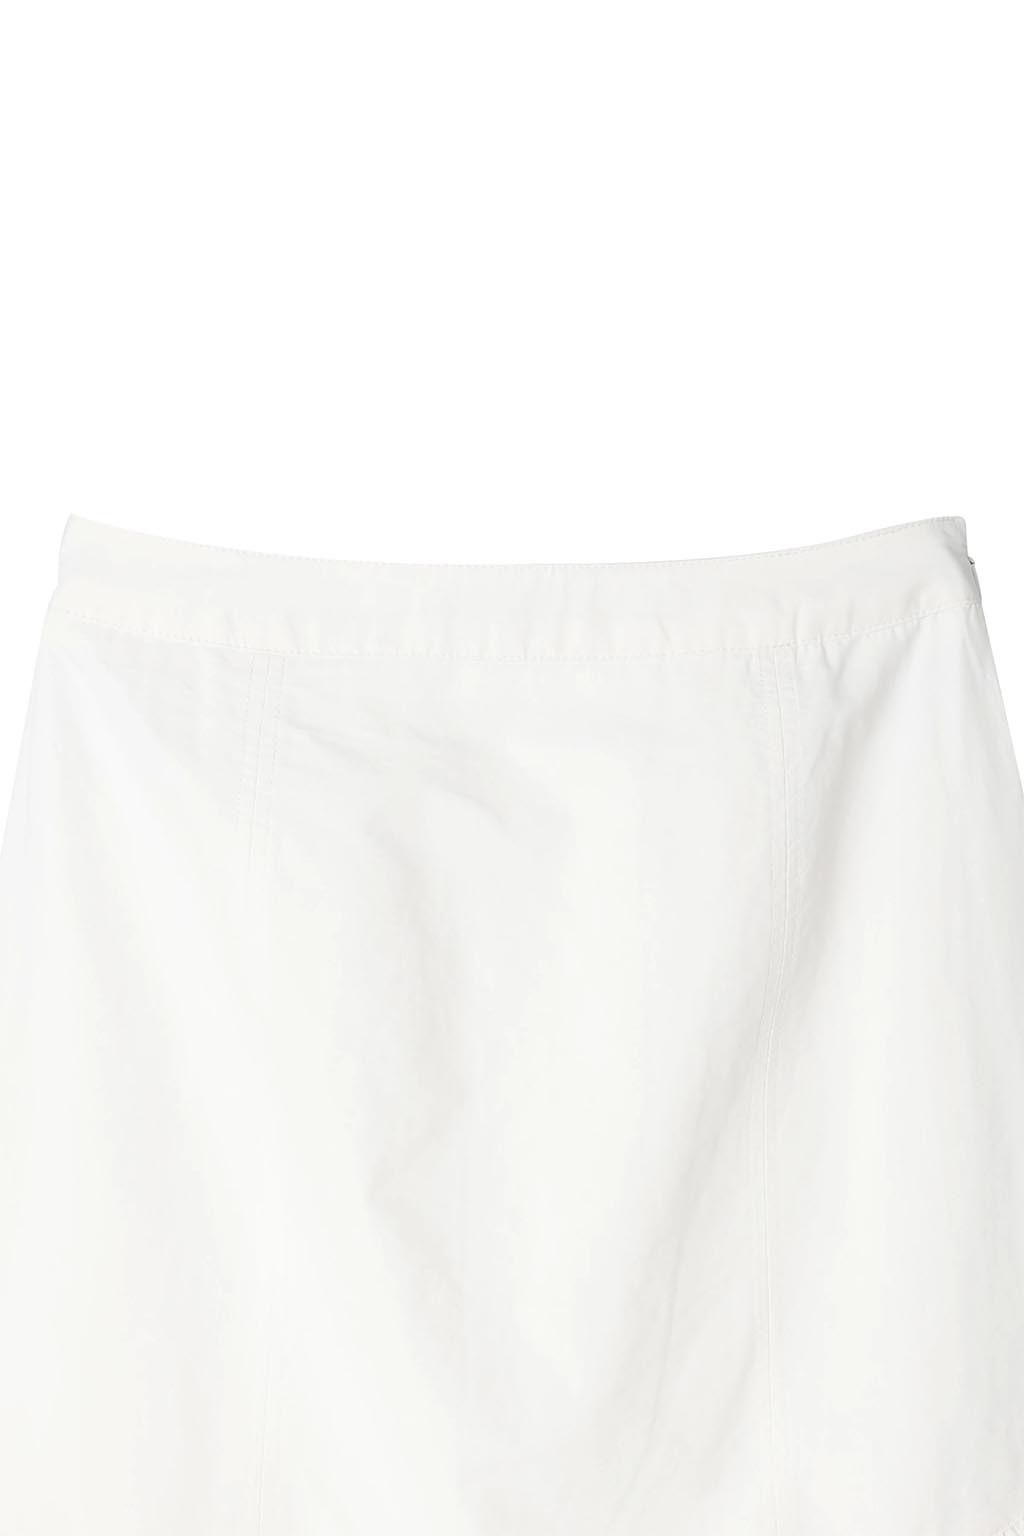 flare-long-skirt-dusty-white-11